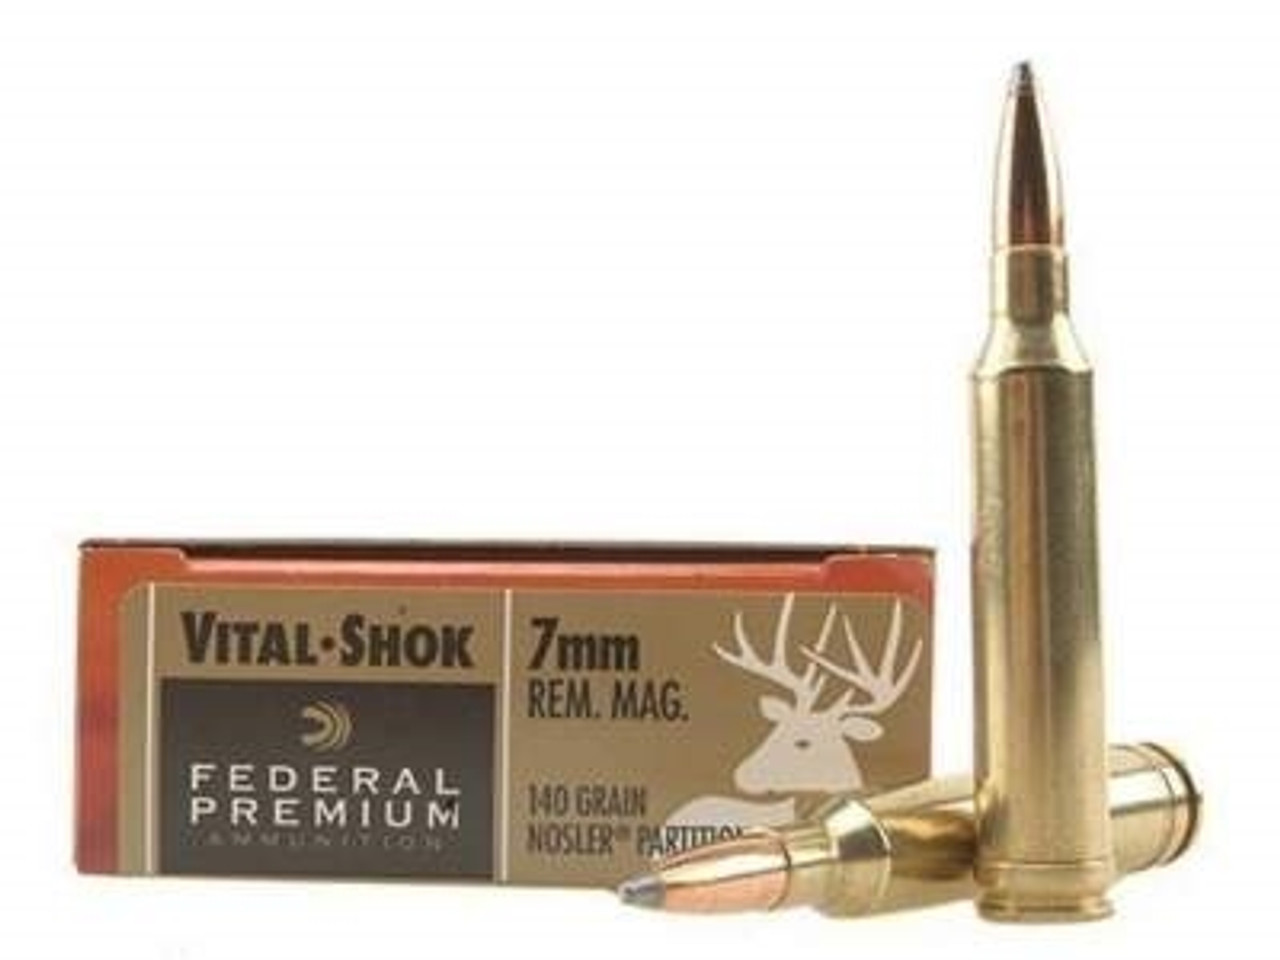 Federal 7mm Rem Mag Ammunition VitalShok P7RG 140 Grain Nosler